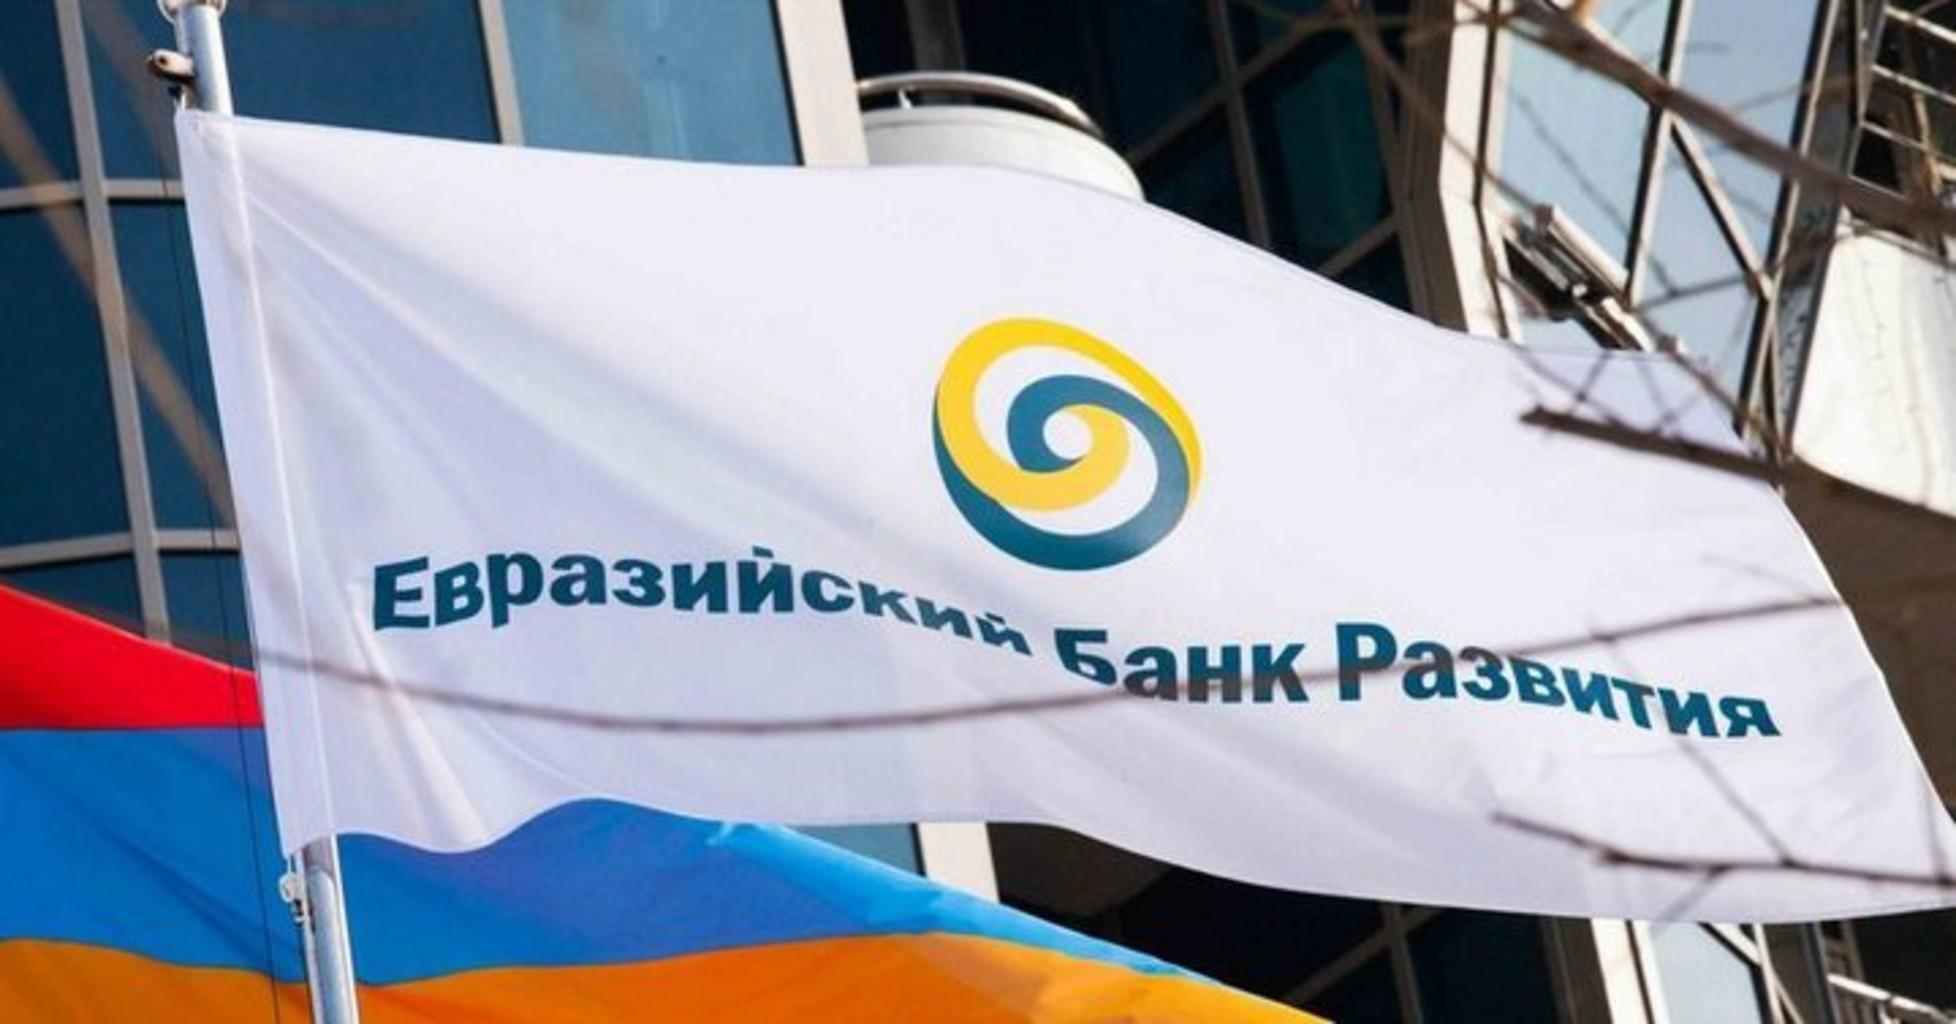 Венгрия и Узбекистан могут присоединиться к Евразийскому банку развития